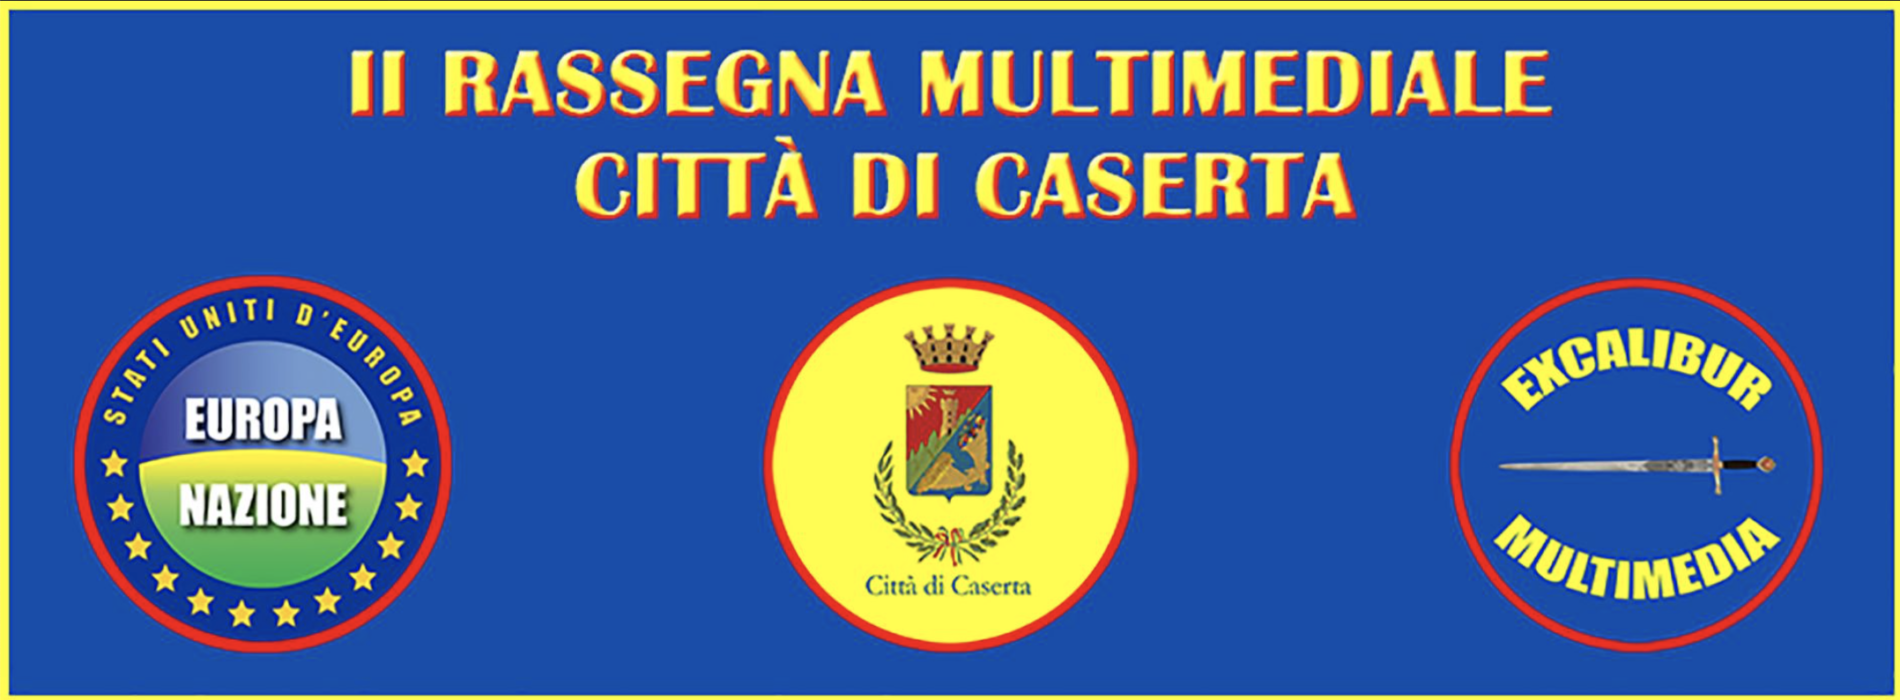 Rassegna multimediale Città di Caserta, seconda edizione